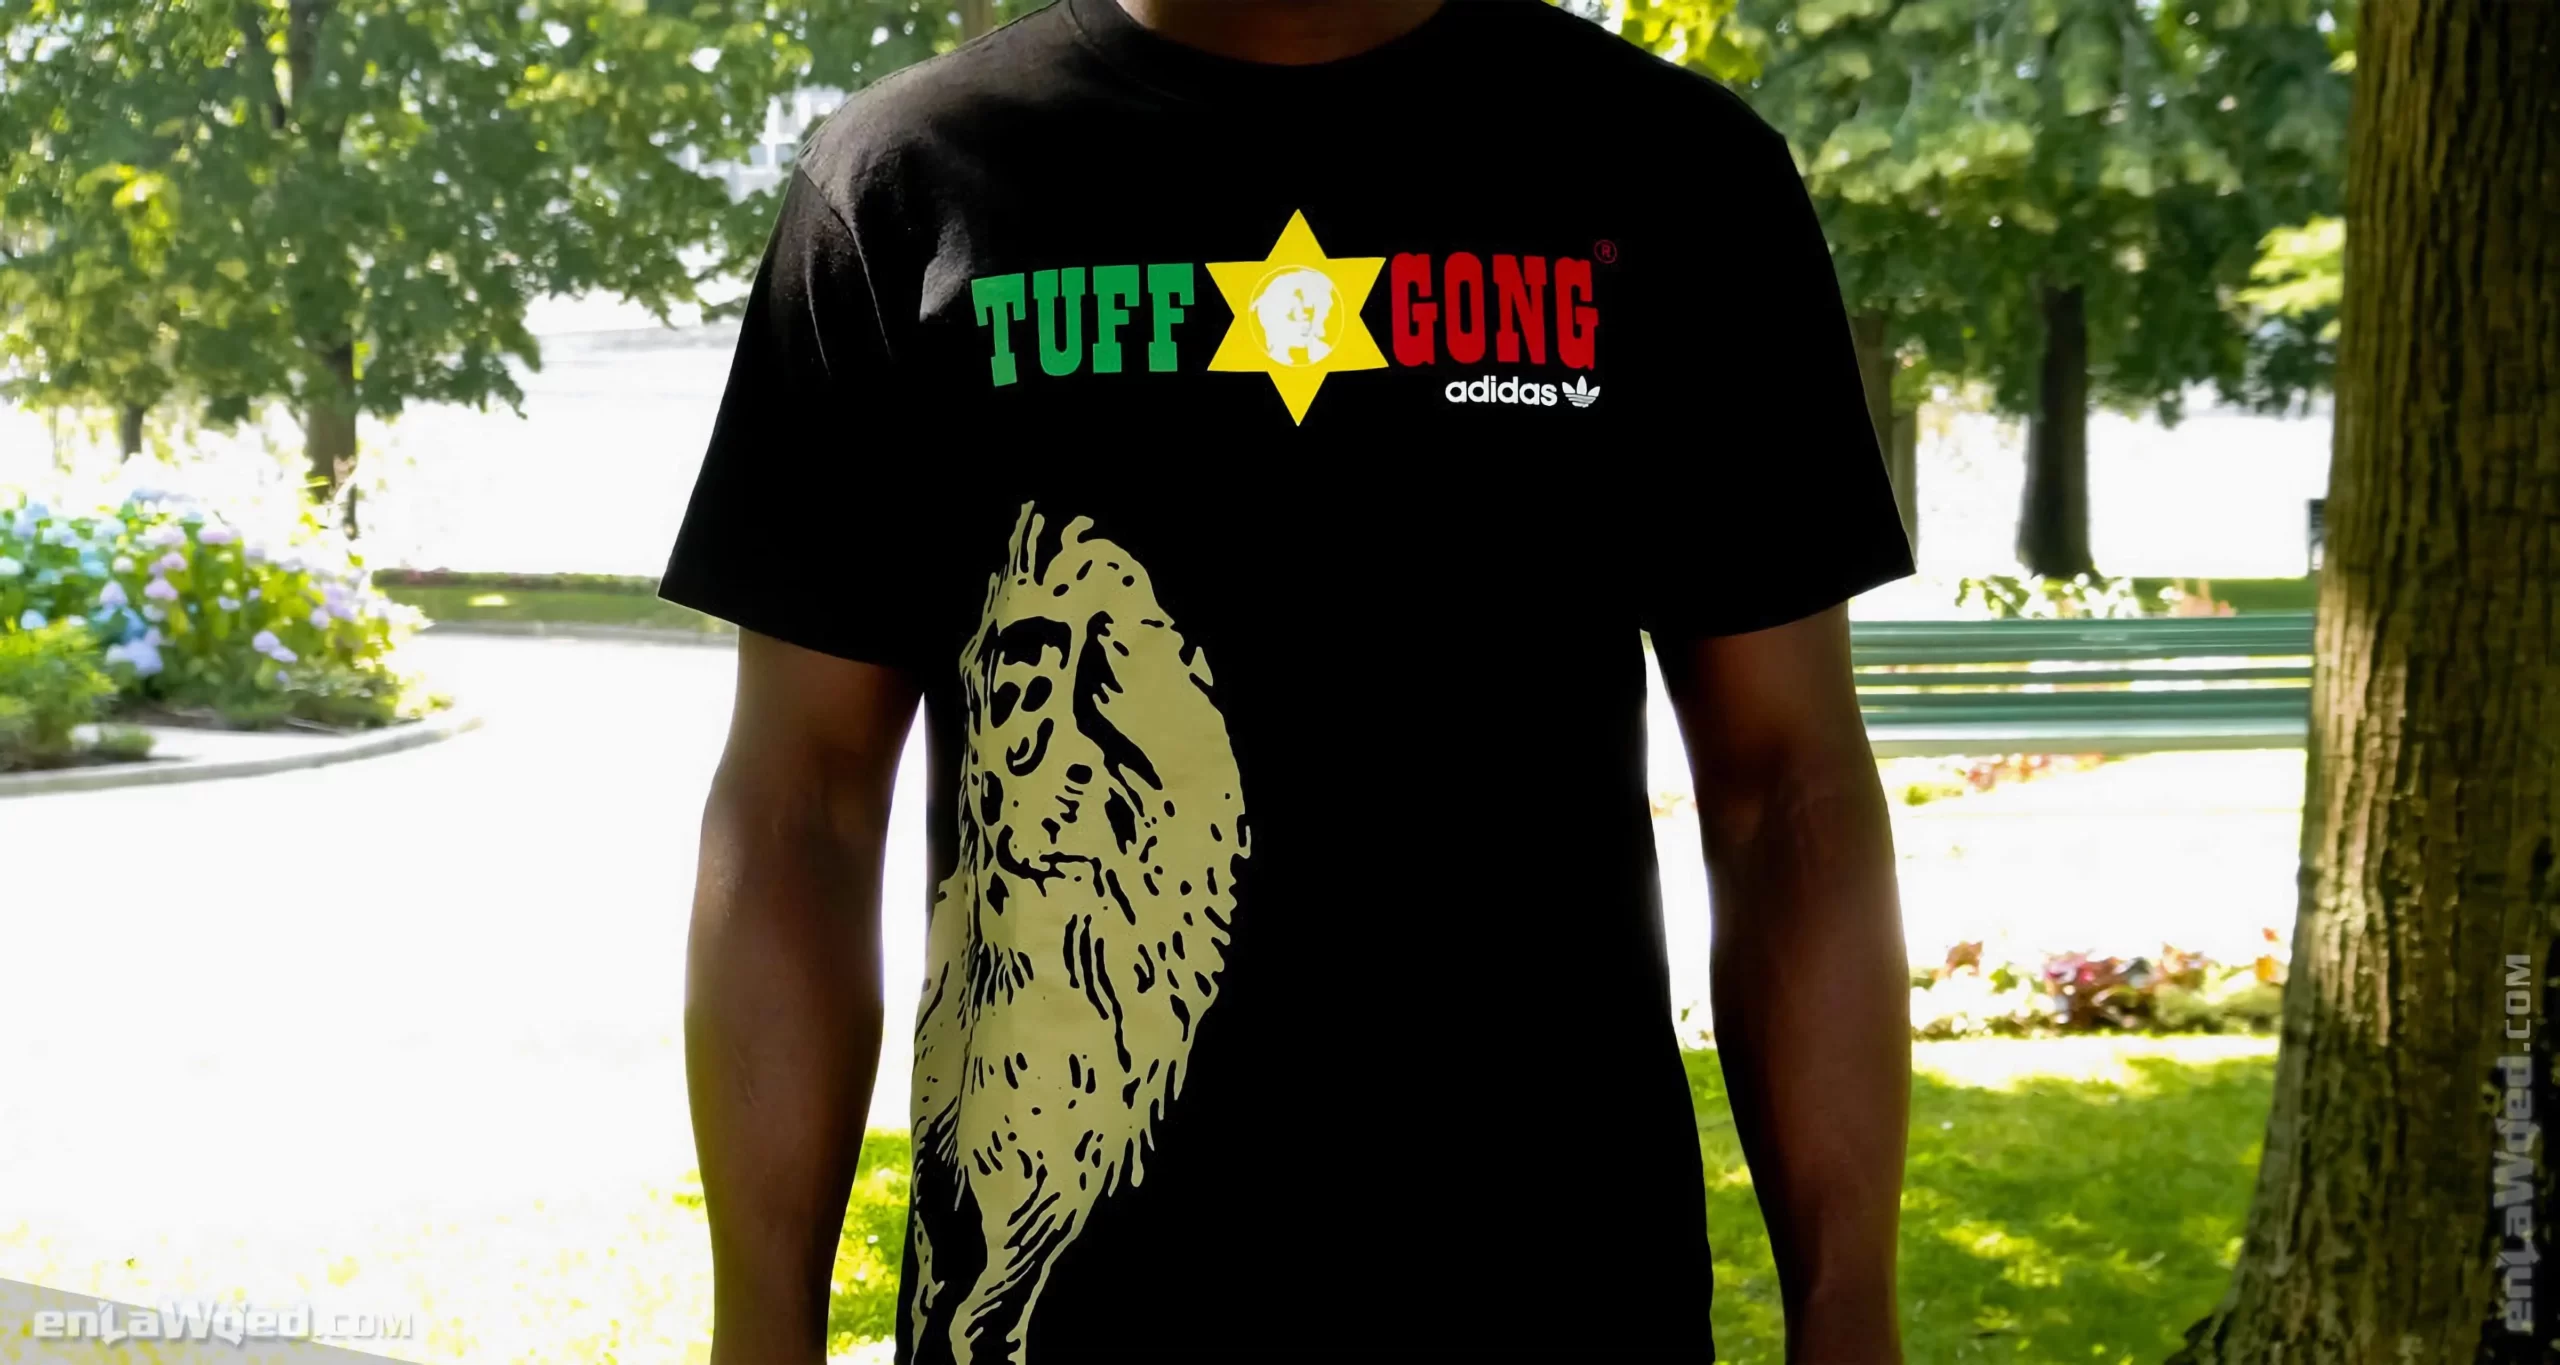 Men’s 2007 Bob Marley SMILE Tuff Gong T-Shirt by Adidas: Fine (EnLawded.com file #lmch6i16mqiwi41brlg)